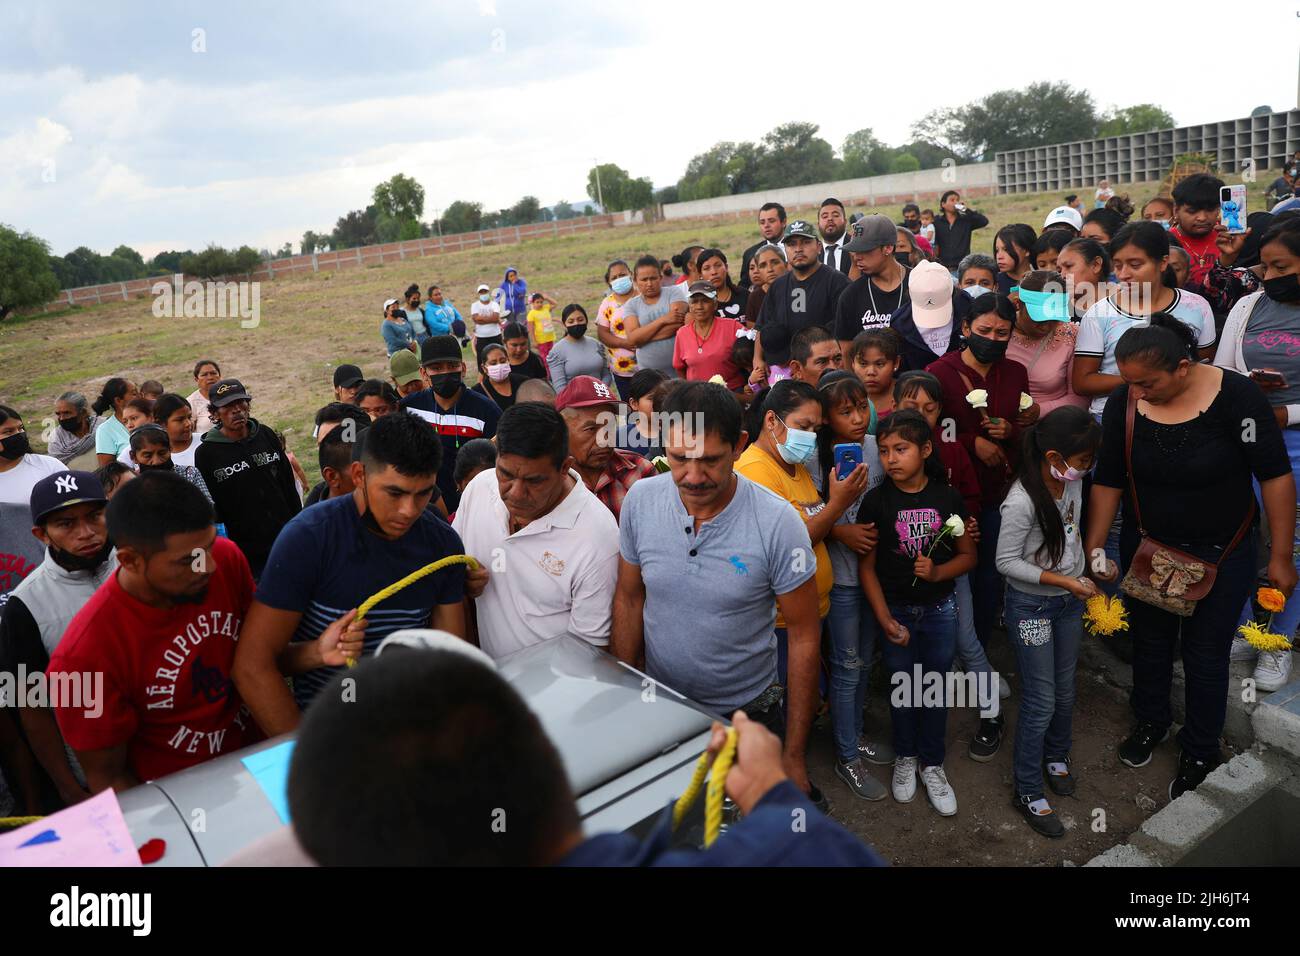 Los hombres llevan el ataúd del difunto migrante José López, de 34 años, quien murió en un camión de remolque en Texas, durante su funeral después de que sus restos fueran repatriados a México, en Celaya, estado de Guanajuato, México, el 15 de julio, 2022. REUTERS/Edgard Garrido Foto de stock